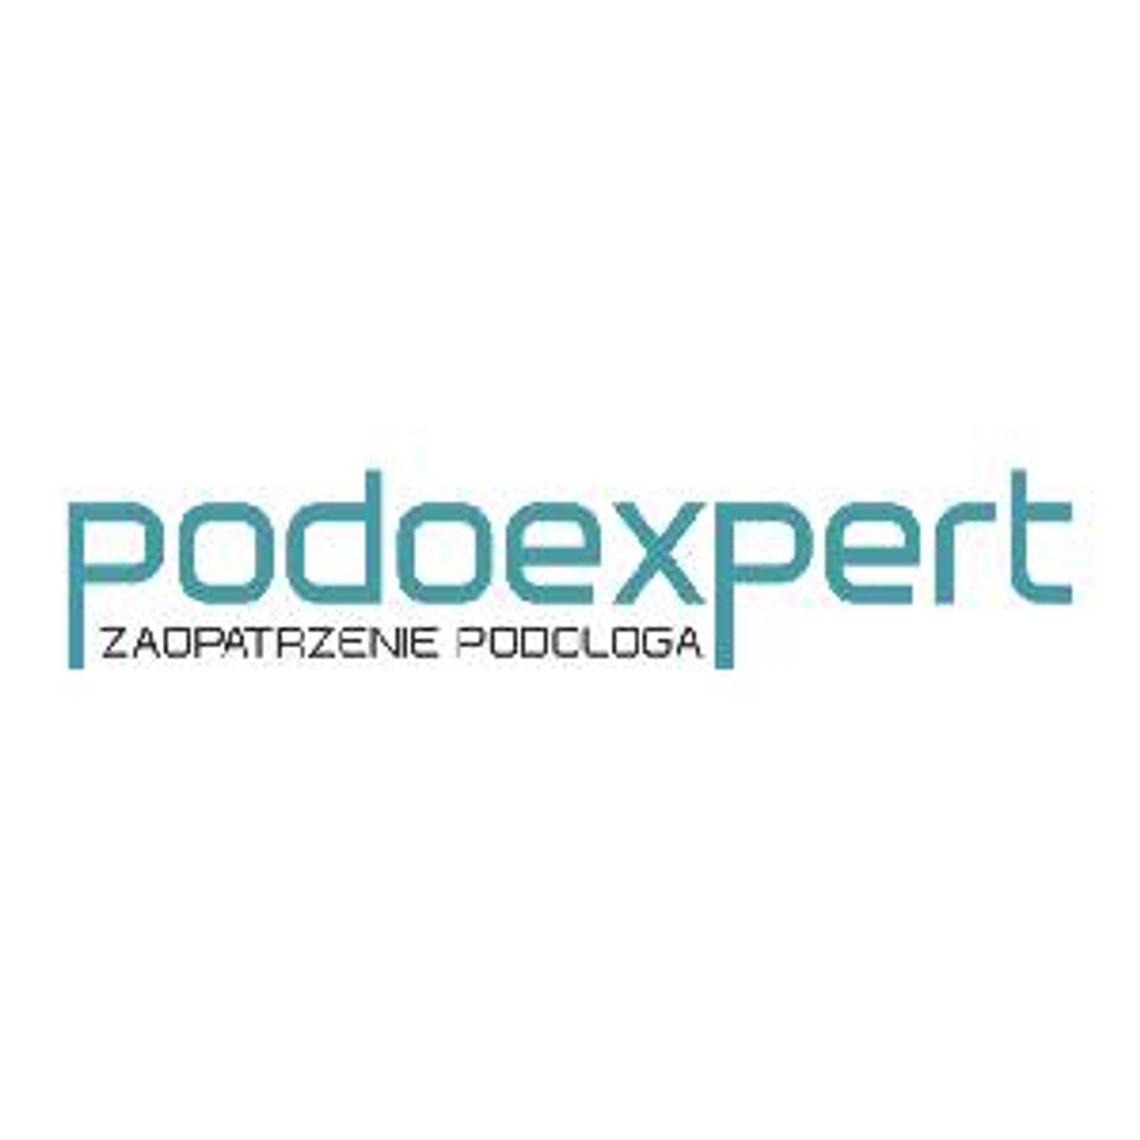 Zaopatrzenie podologa - Podoexpert